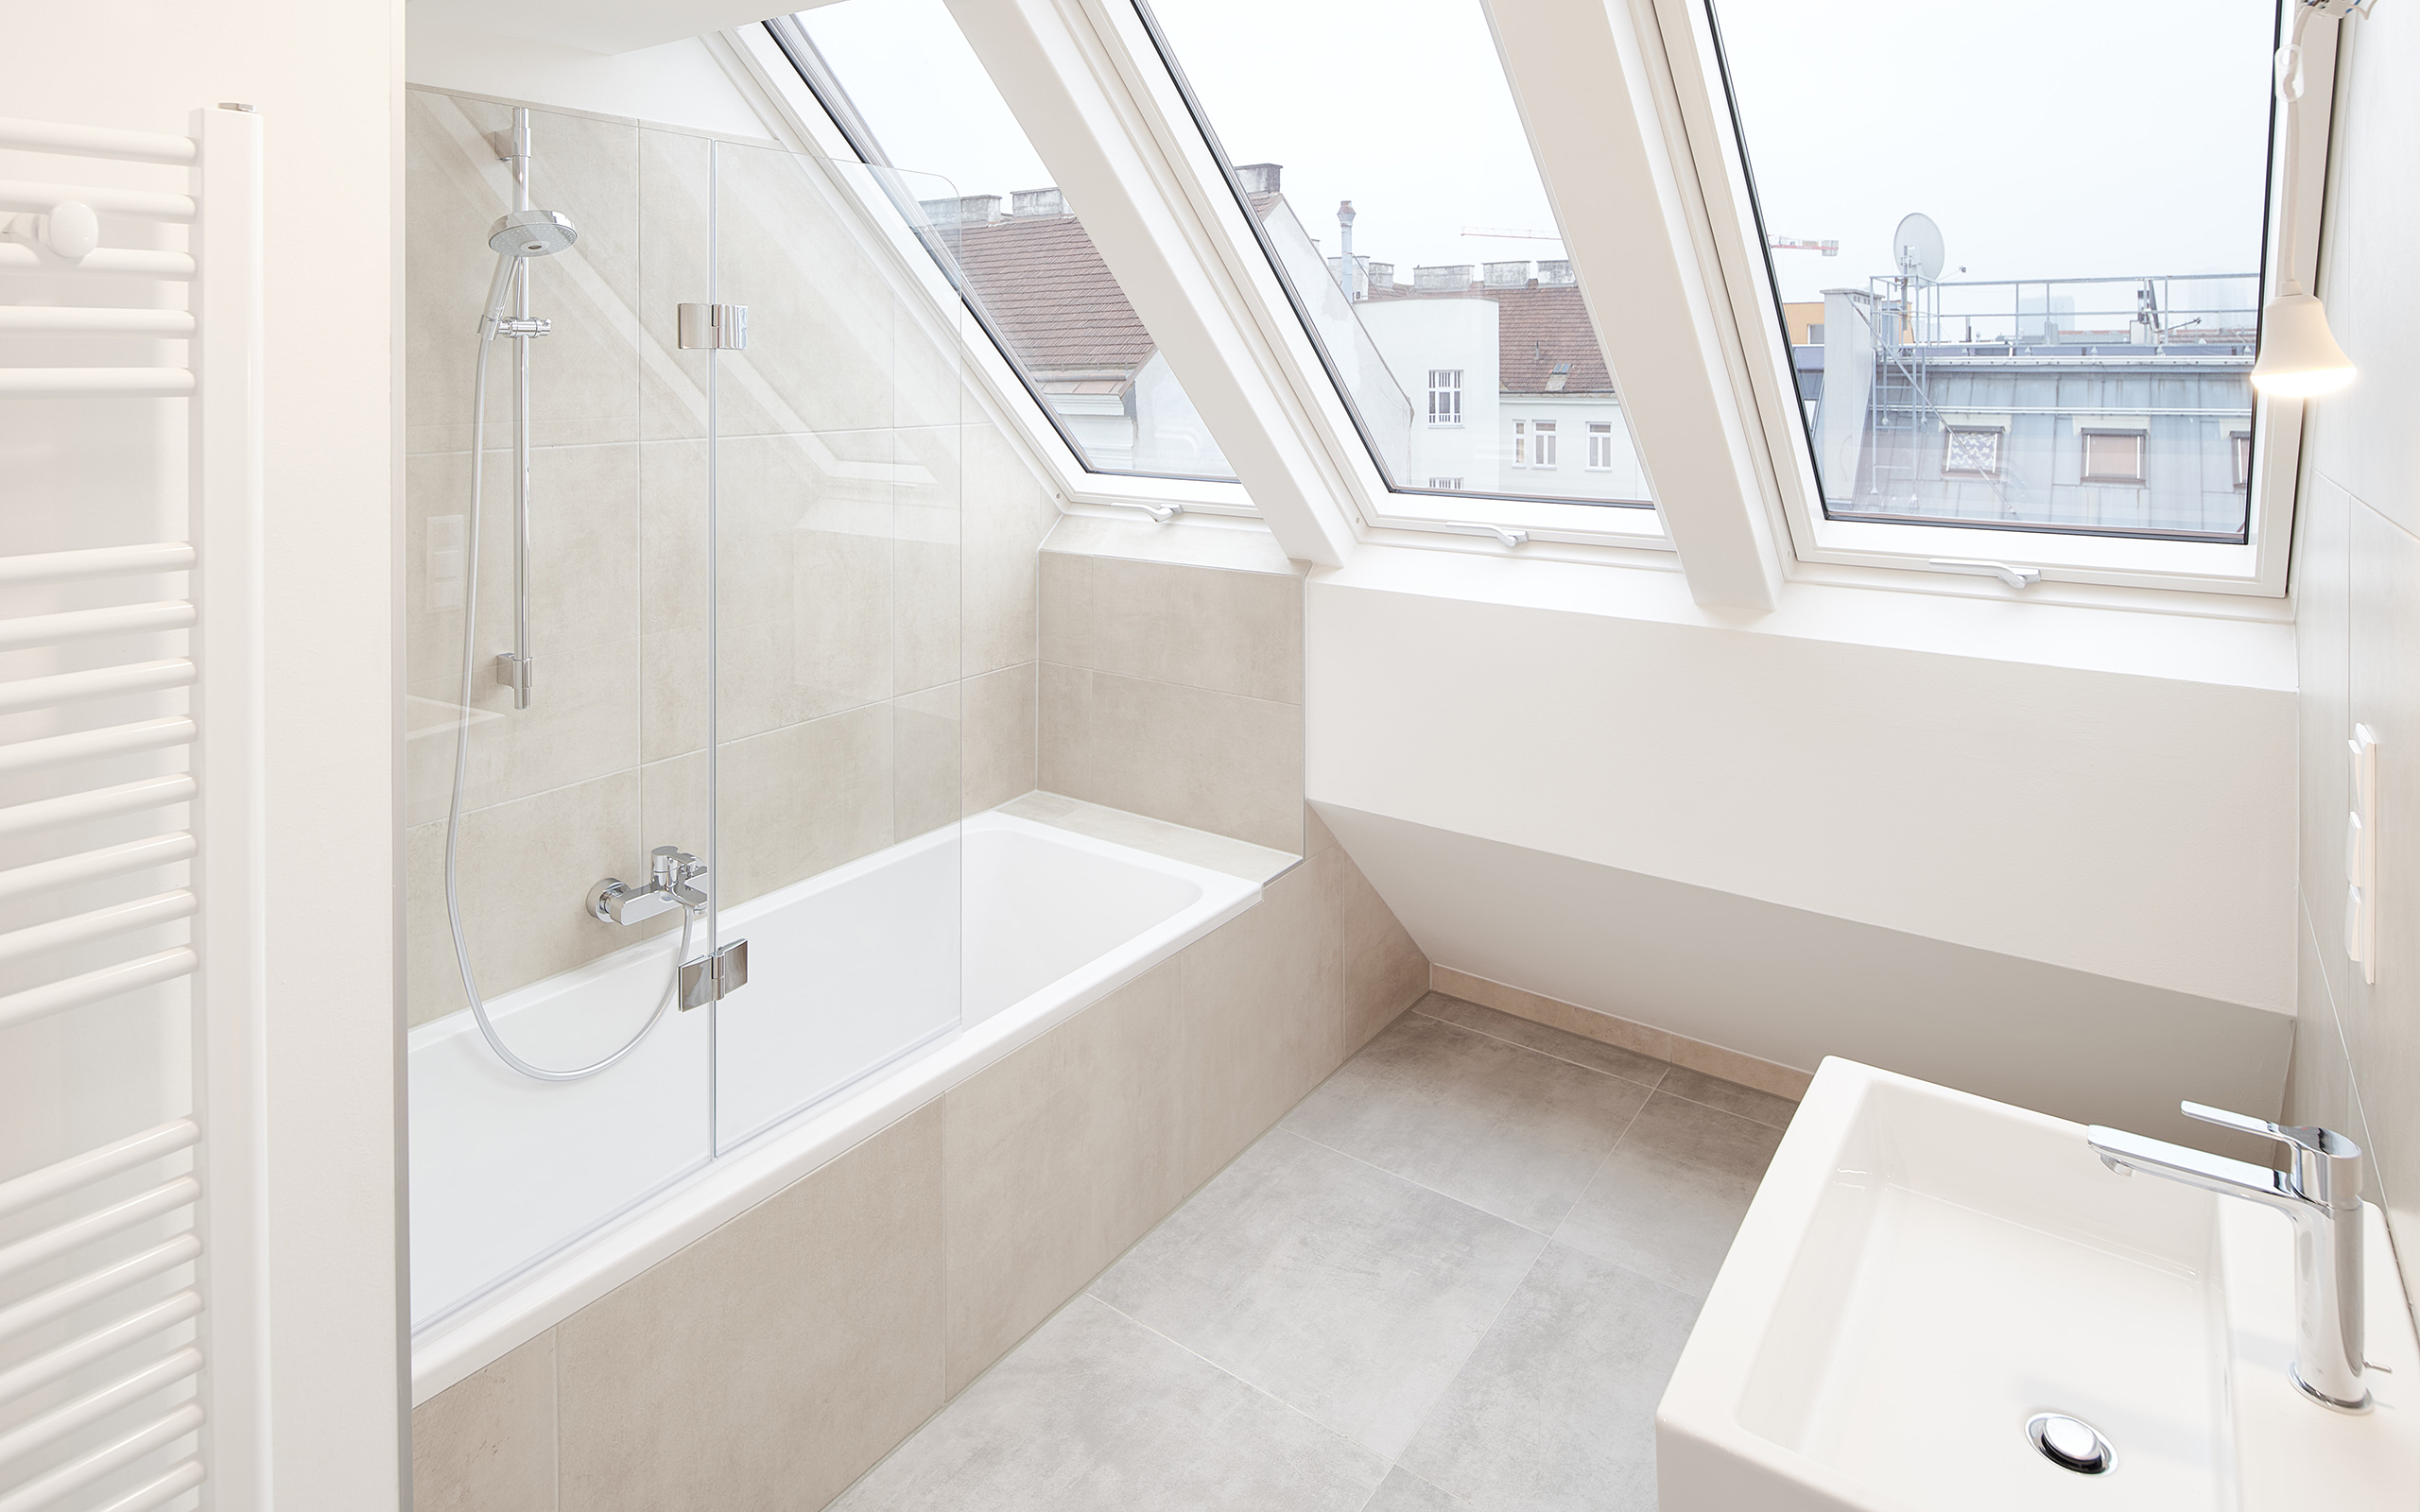 Wundervoll ausgestattete und helle Badezimmer im Neubauprojekt in der Van-der-Nuell-Gasse 78 1100 Wien